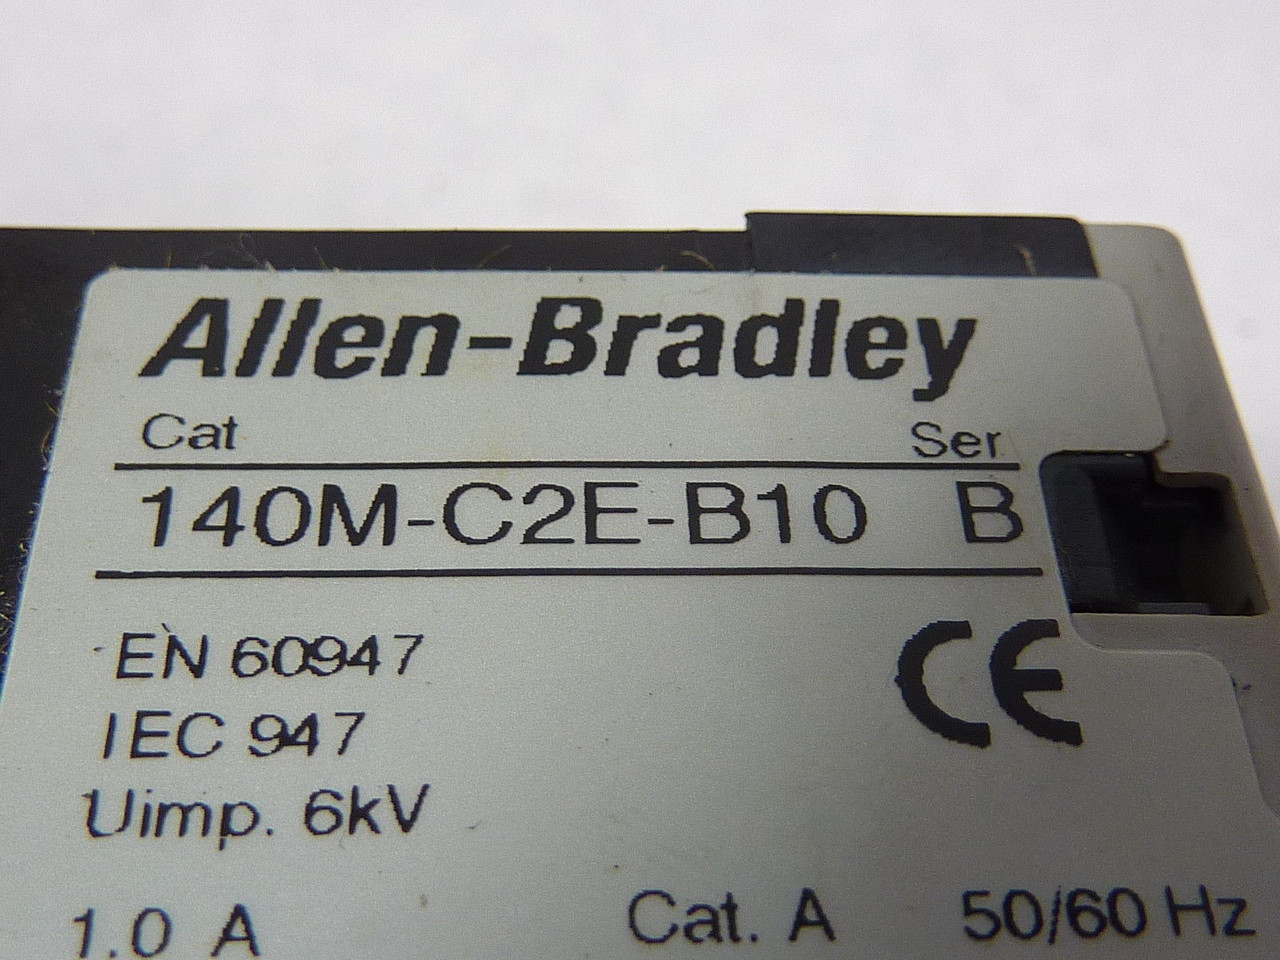 Allen-Bradley 140M-C2E-B10 Series B Manual Motor Starter 600V 0.63-1A USED